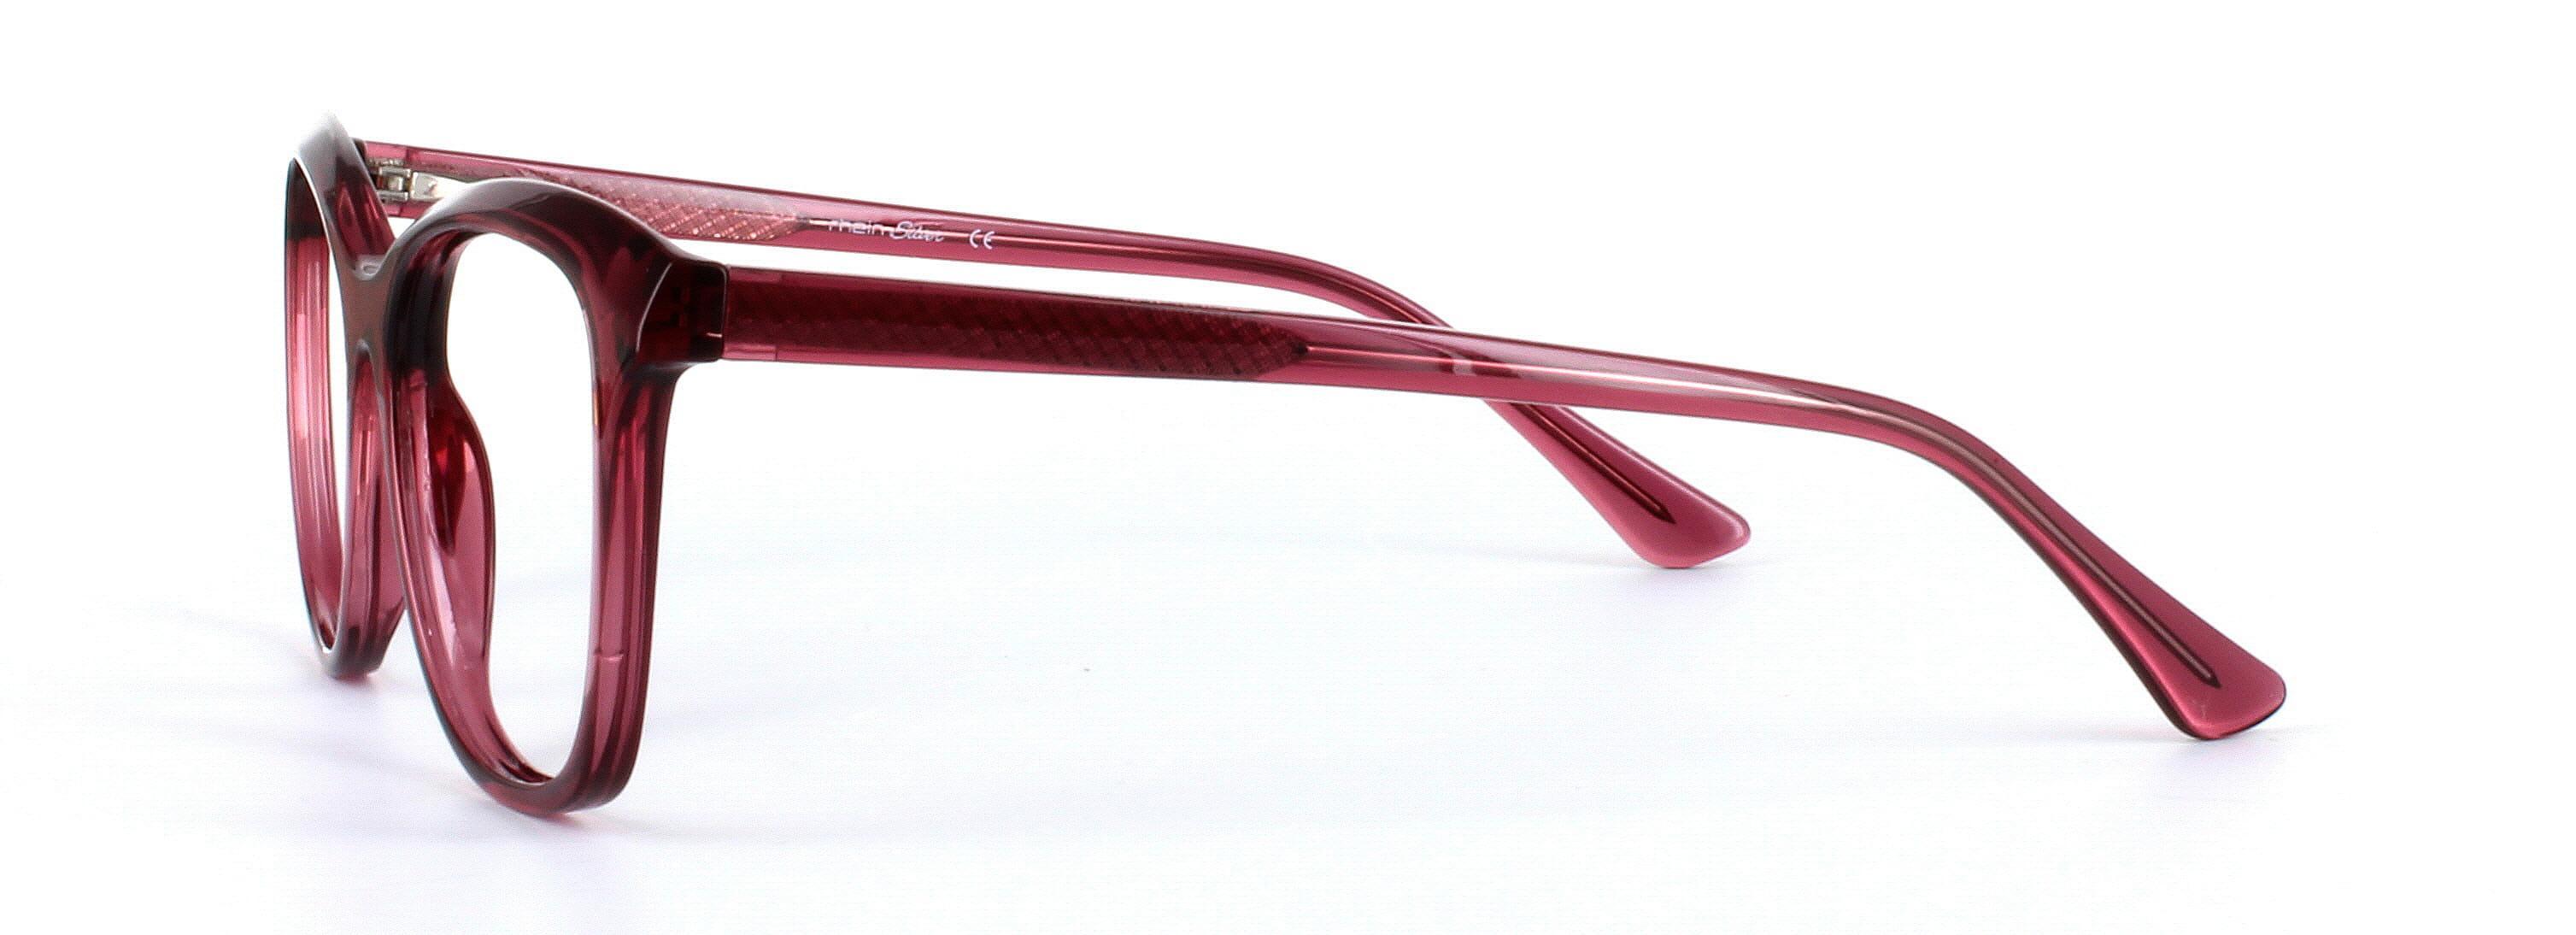 Kelsey Burgundy Full Rim Round Plastic Glasses - Image View 2